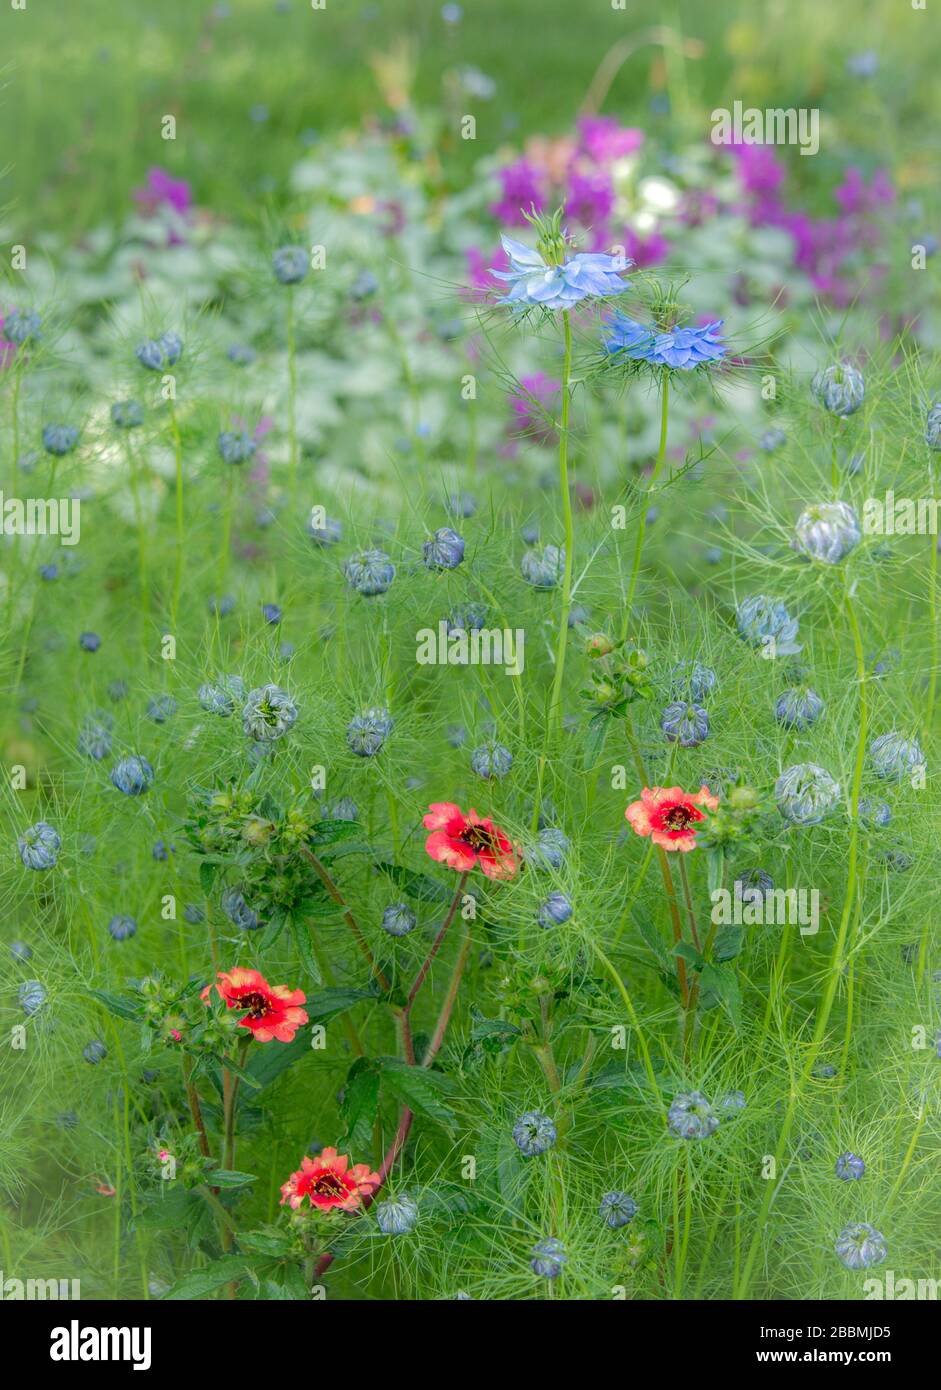 Jardin de campagne anglais, frontière vivace mixte avec geum, salvia et nigella. Towcester, Royaume-Uni Banque D'Images